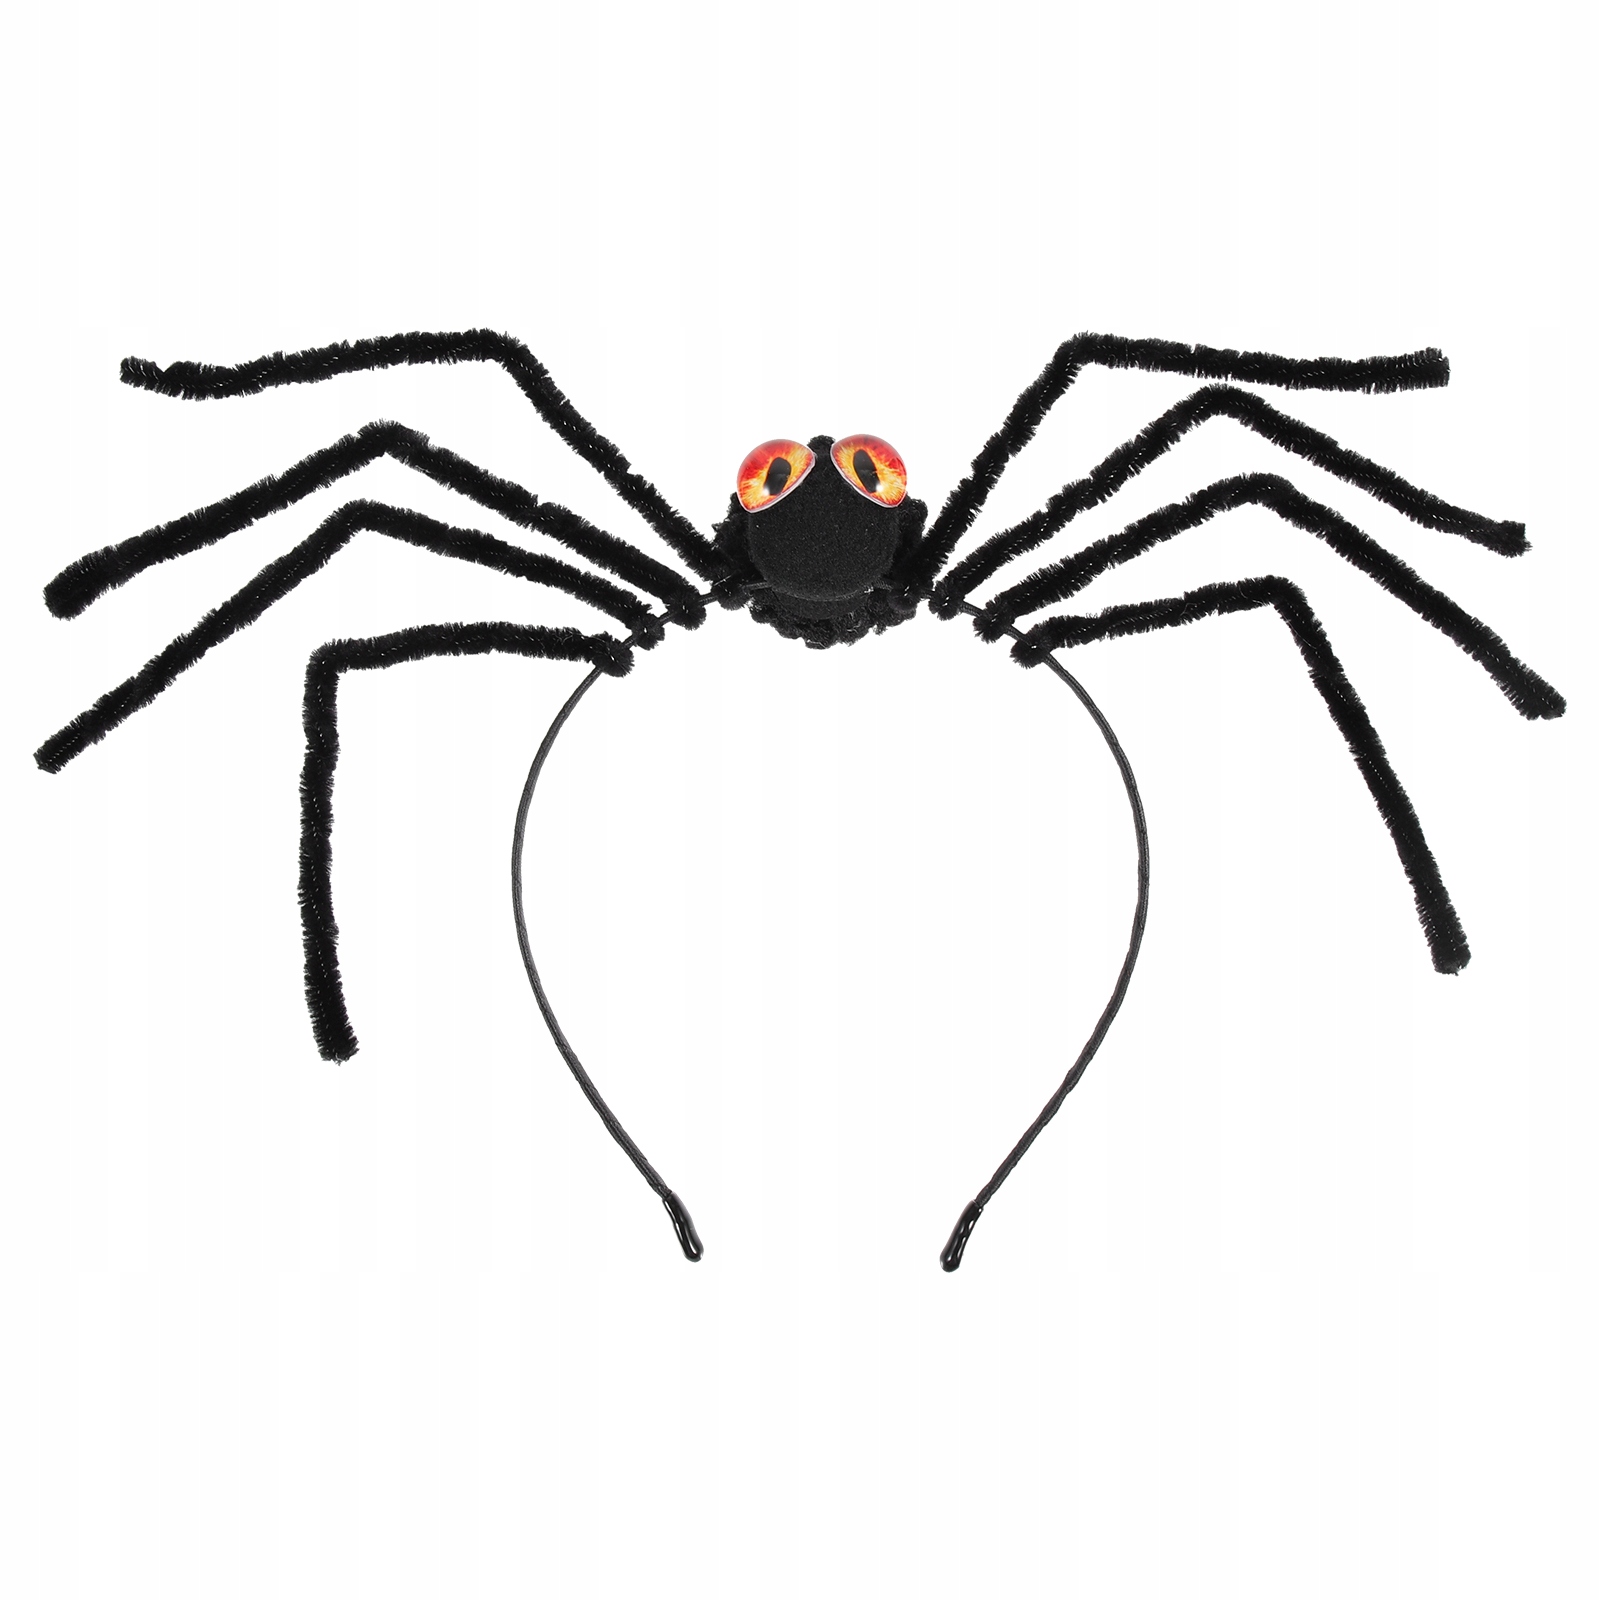 Pavouk čelenky čelenka do vlasů pavouk za 139 Kč od Shenzhen - Allegro -  (13020894884)